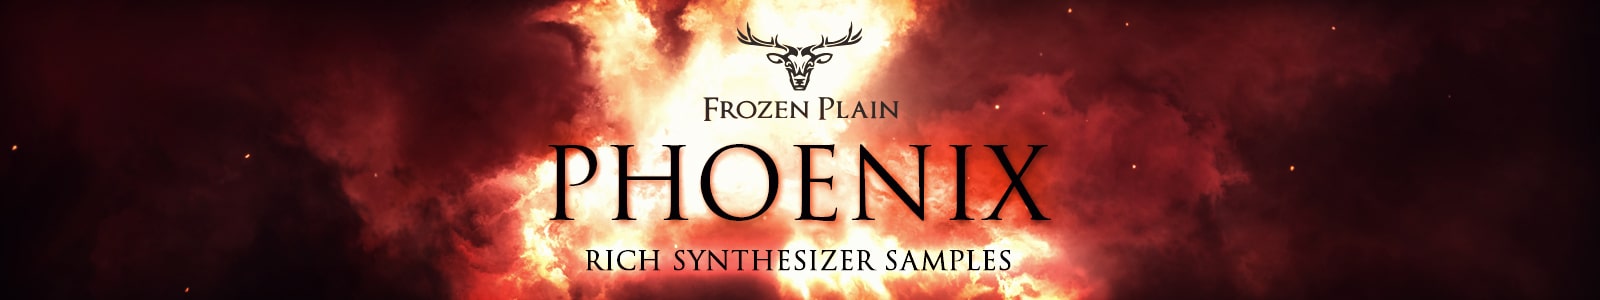 phoenix by frozen plain